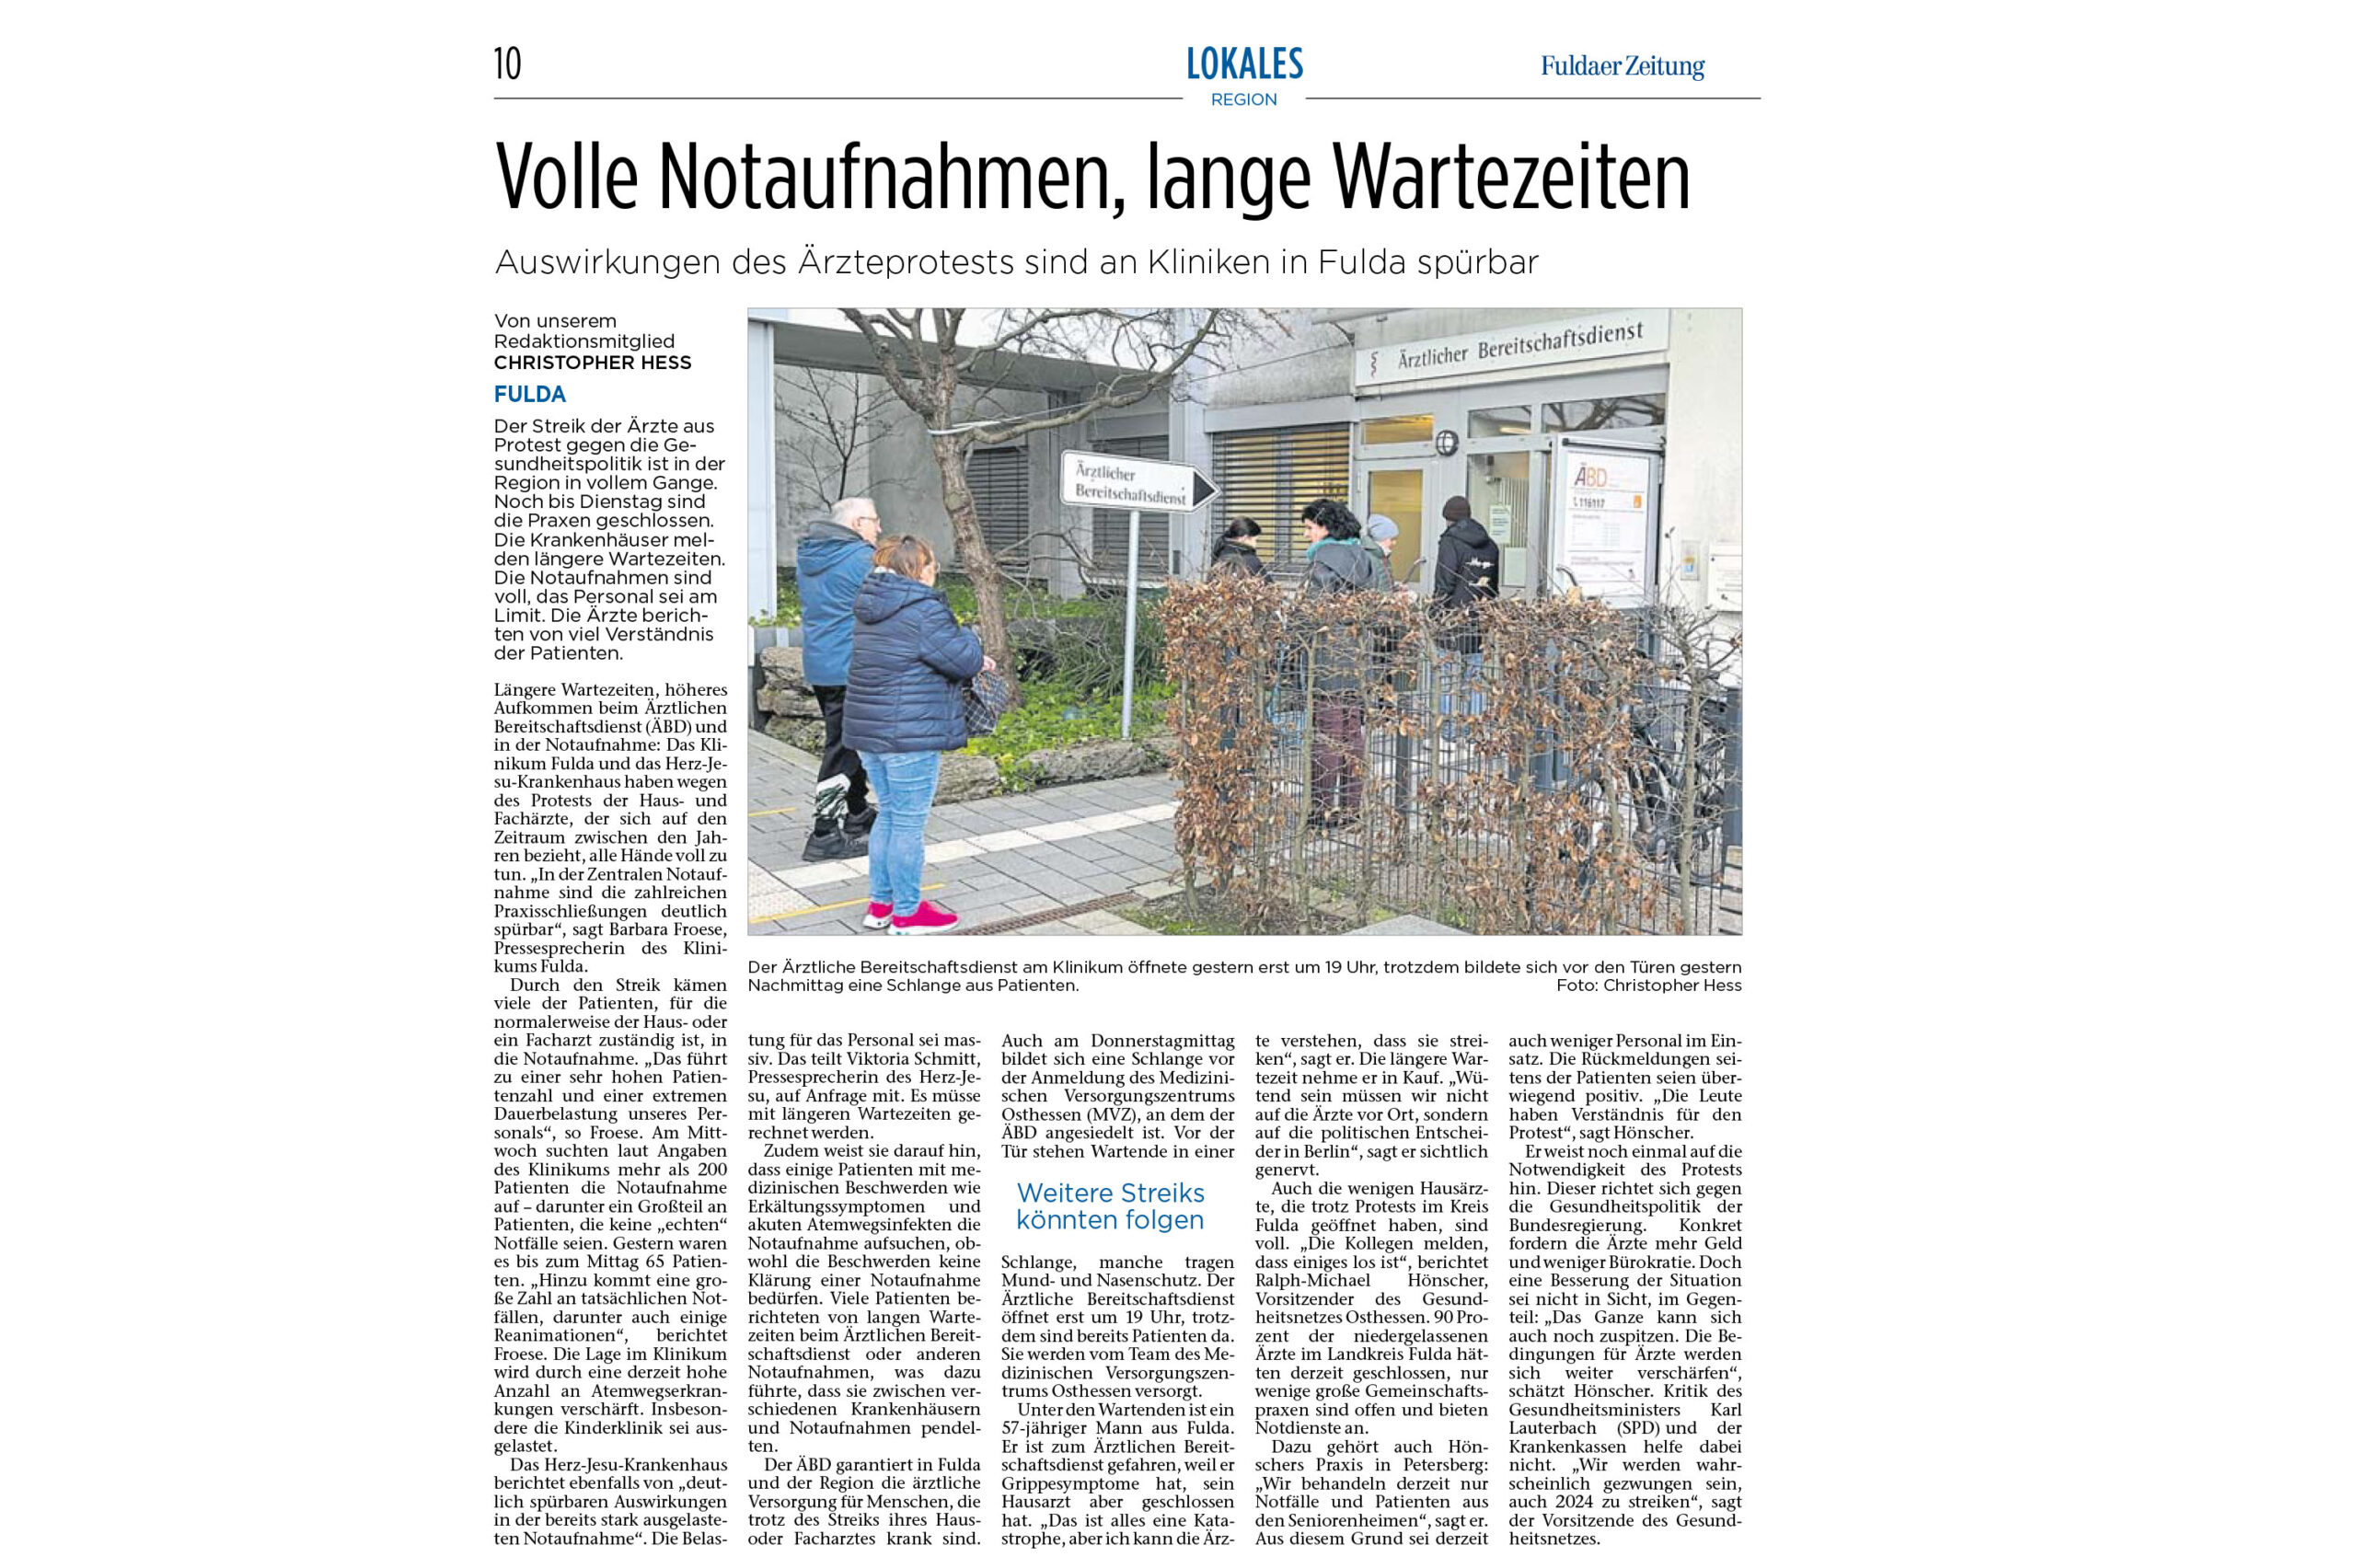 Fuldaer Zeitung: Volle Notaufnahmen, lange Wartezeiten: Auswirkungen des Ärzte-Streiks an Fuldaer Kliniken spürbar